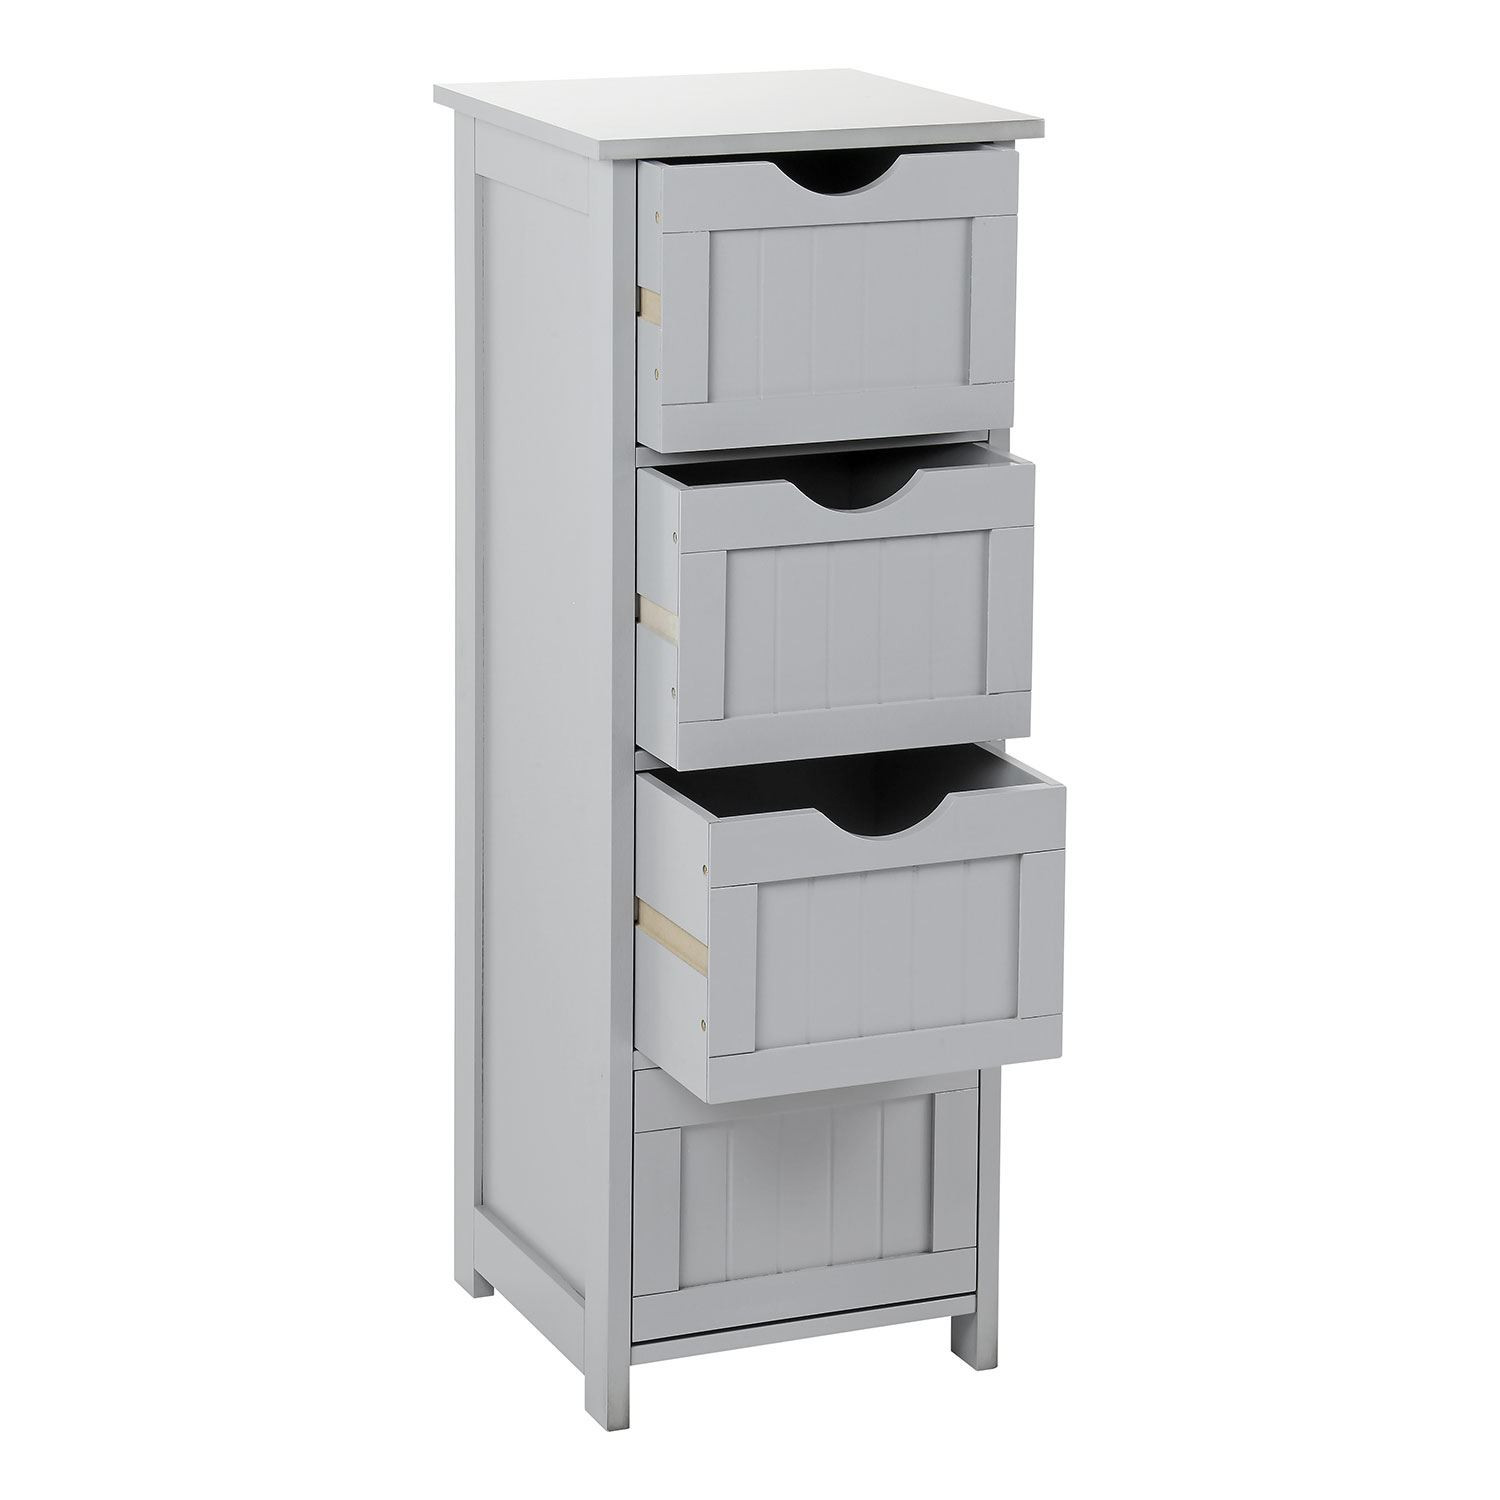 Storage Unit For Bedroom
 Grey Wooden Bathroom Cabinet Shelf Cupboard Bedroom